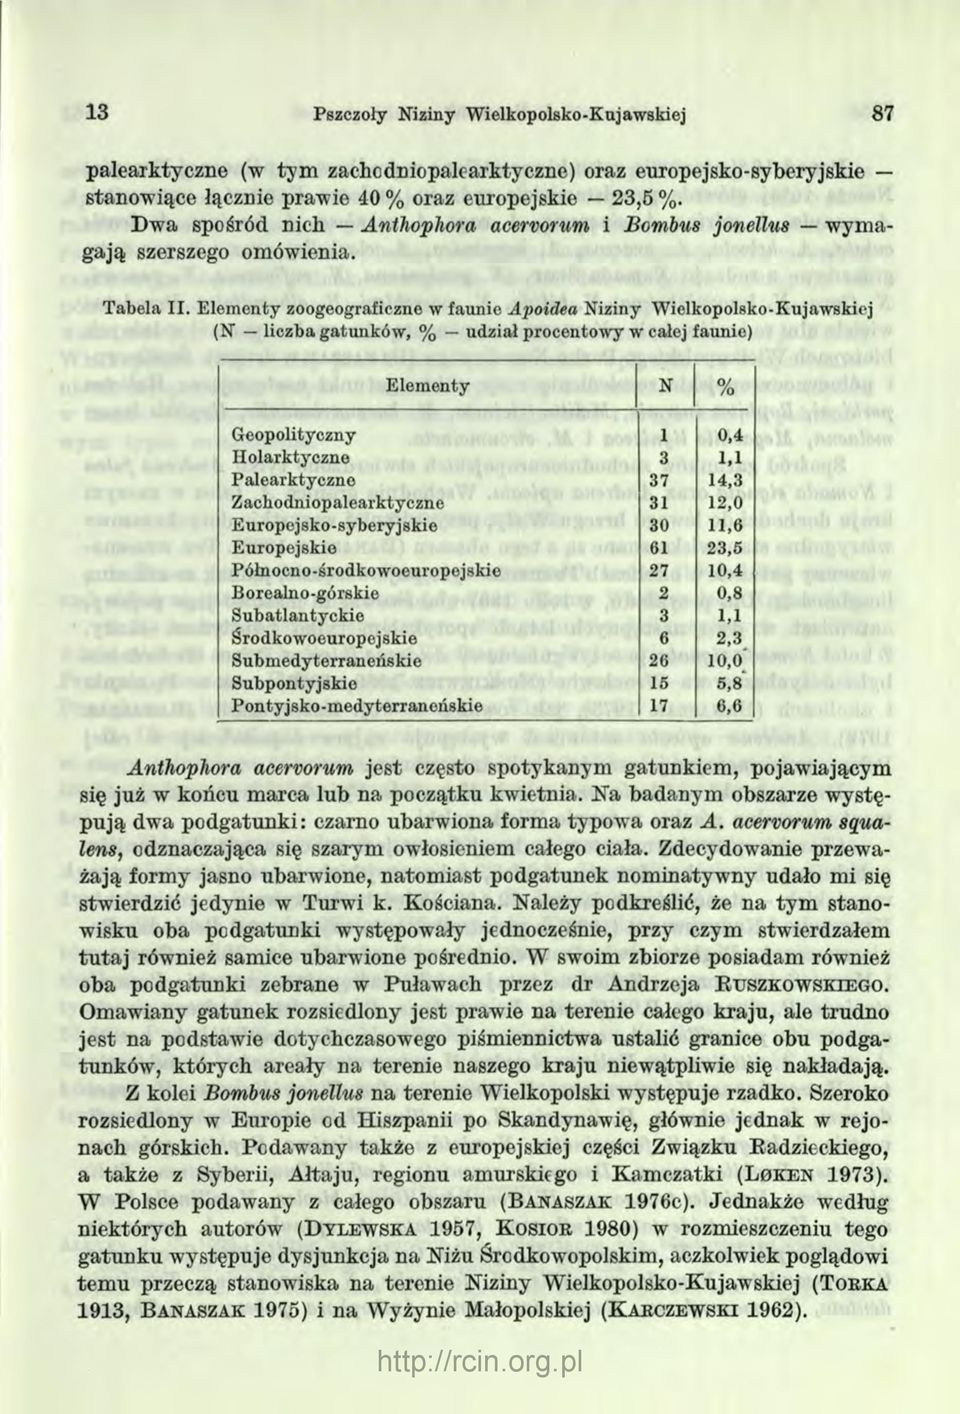 Elementy zoogeograficzne w faunie Apoidea Niziny Wielkopolsko-Kujawskiej (N liczba gatunków, % udział procentowy w całej faunie) Elementy N 0/ /o Geopolityczny 1 0,4 Holarktyczne 3 1.